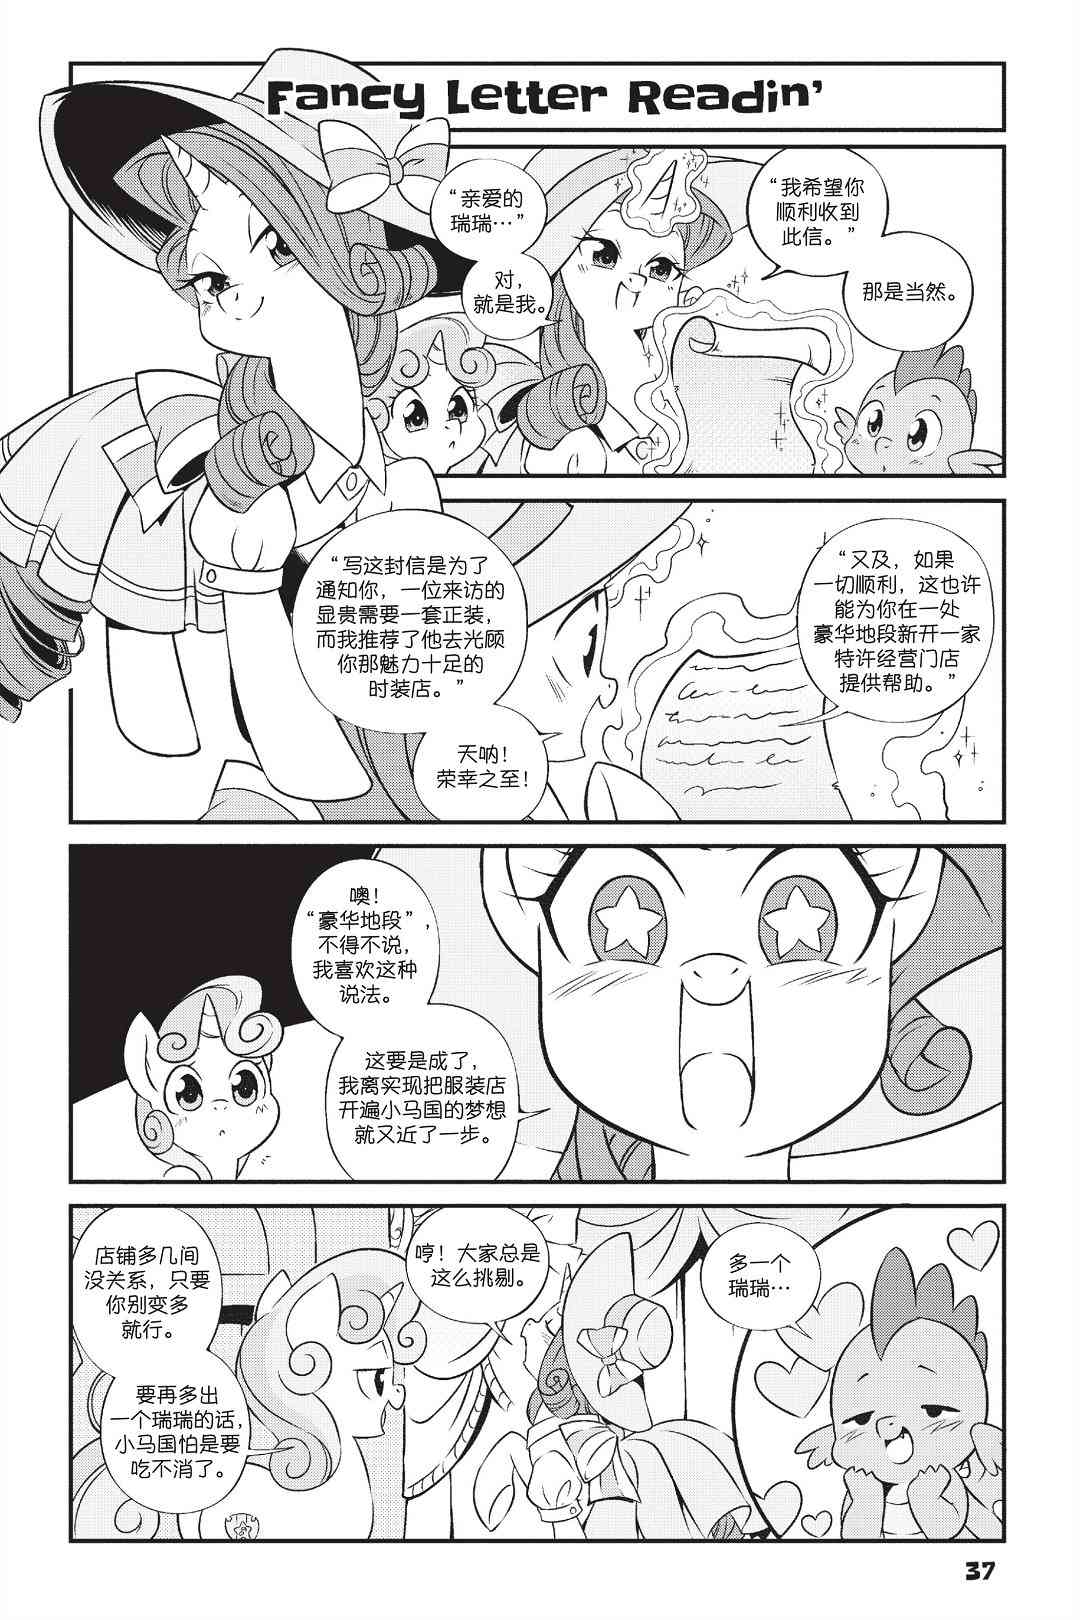 彩虹小馬G4：友情就是魔法 - 新日版漫畫第01部第03話 - 1